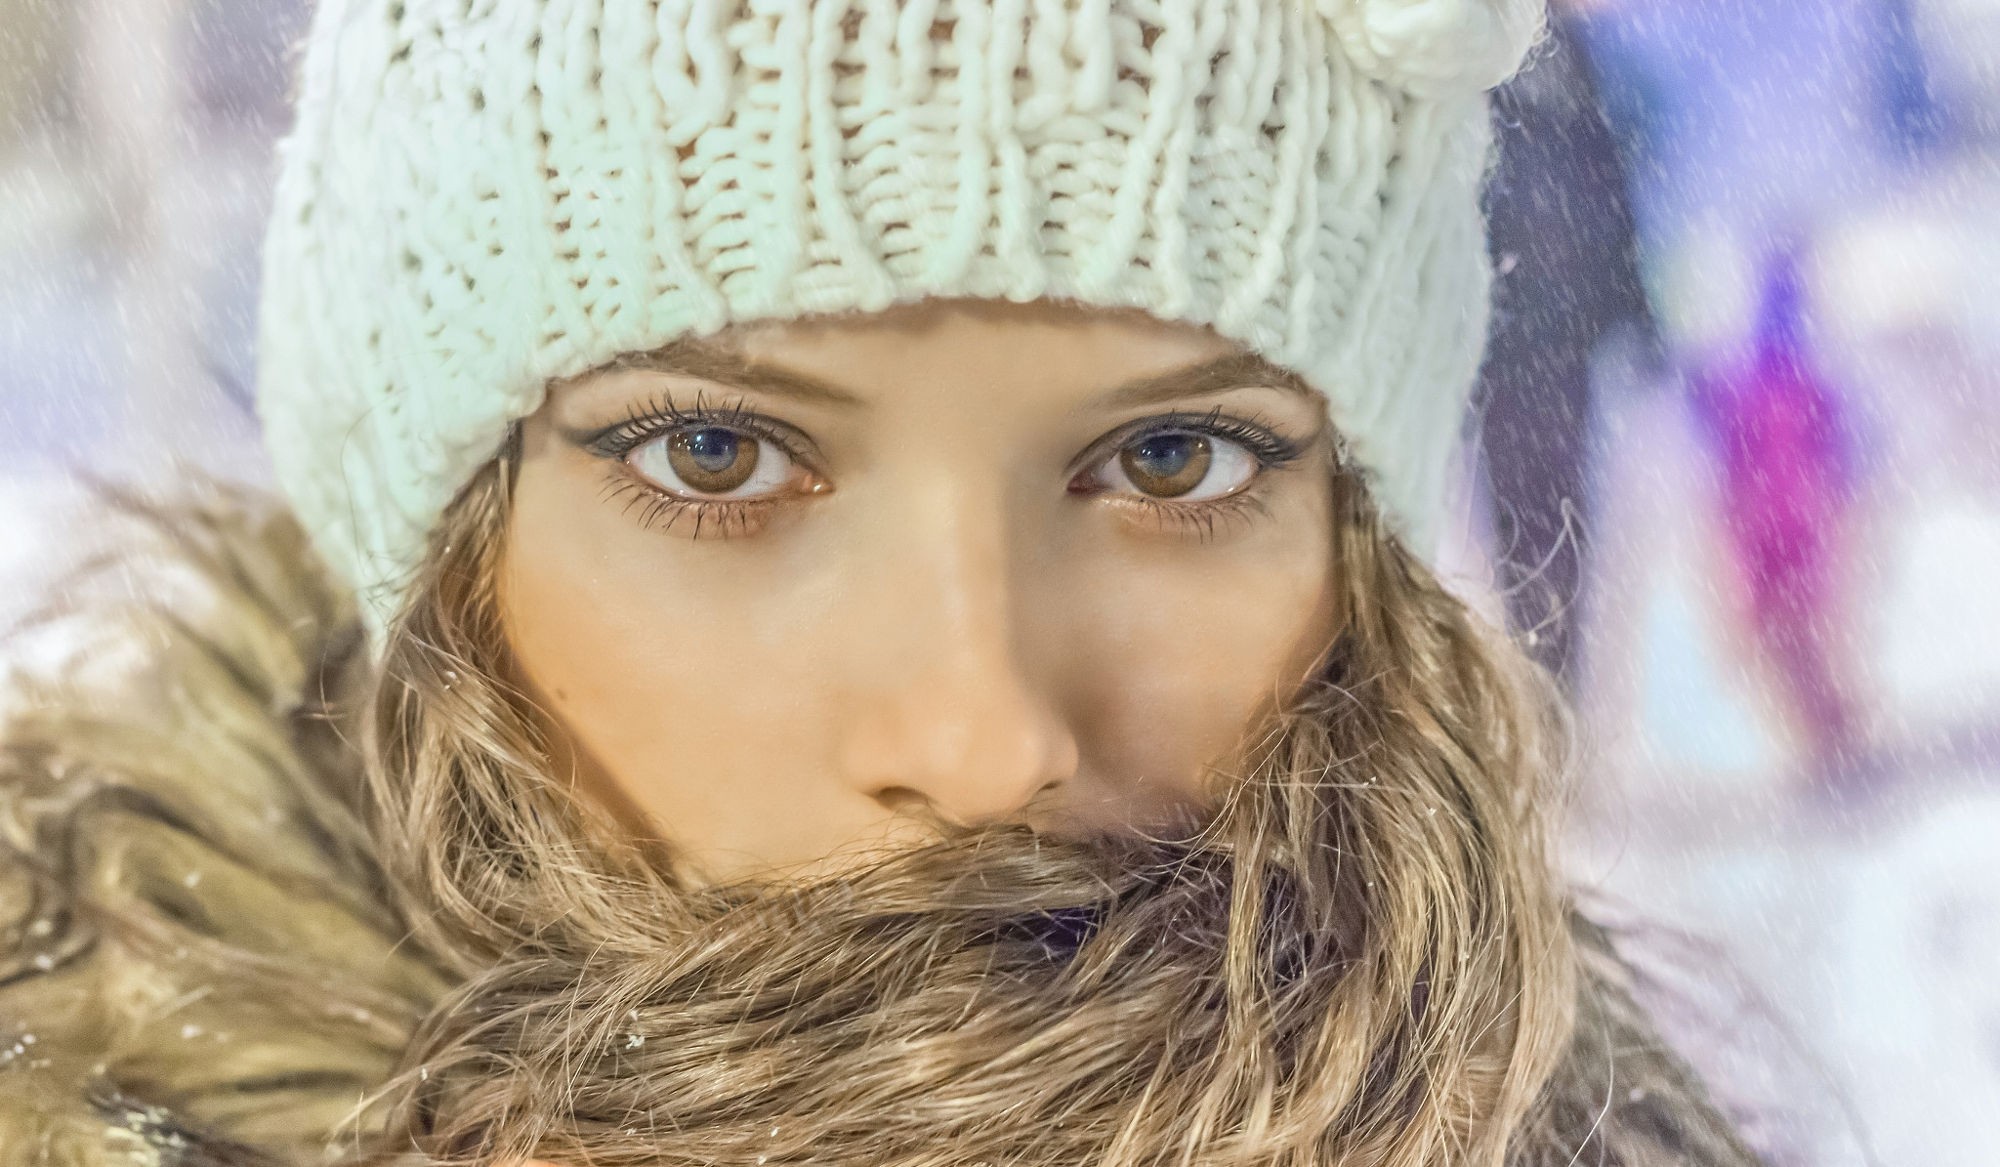 Cold Winter Woolly Hat Women Wool Cap Hazel Eyes Model White Cap Closeup Portrait 2000x1167